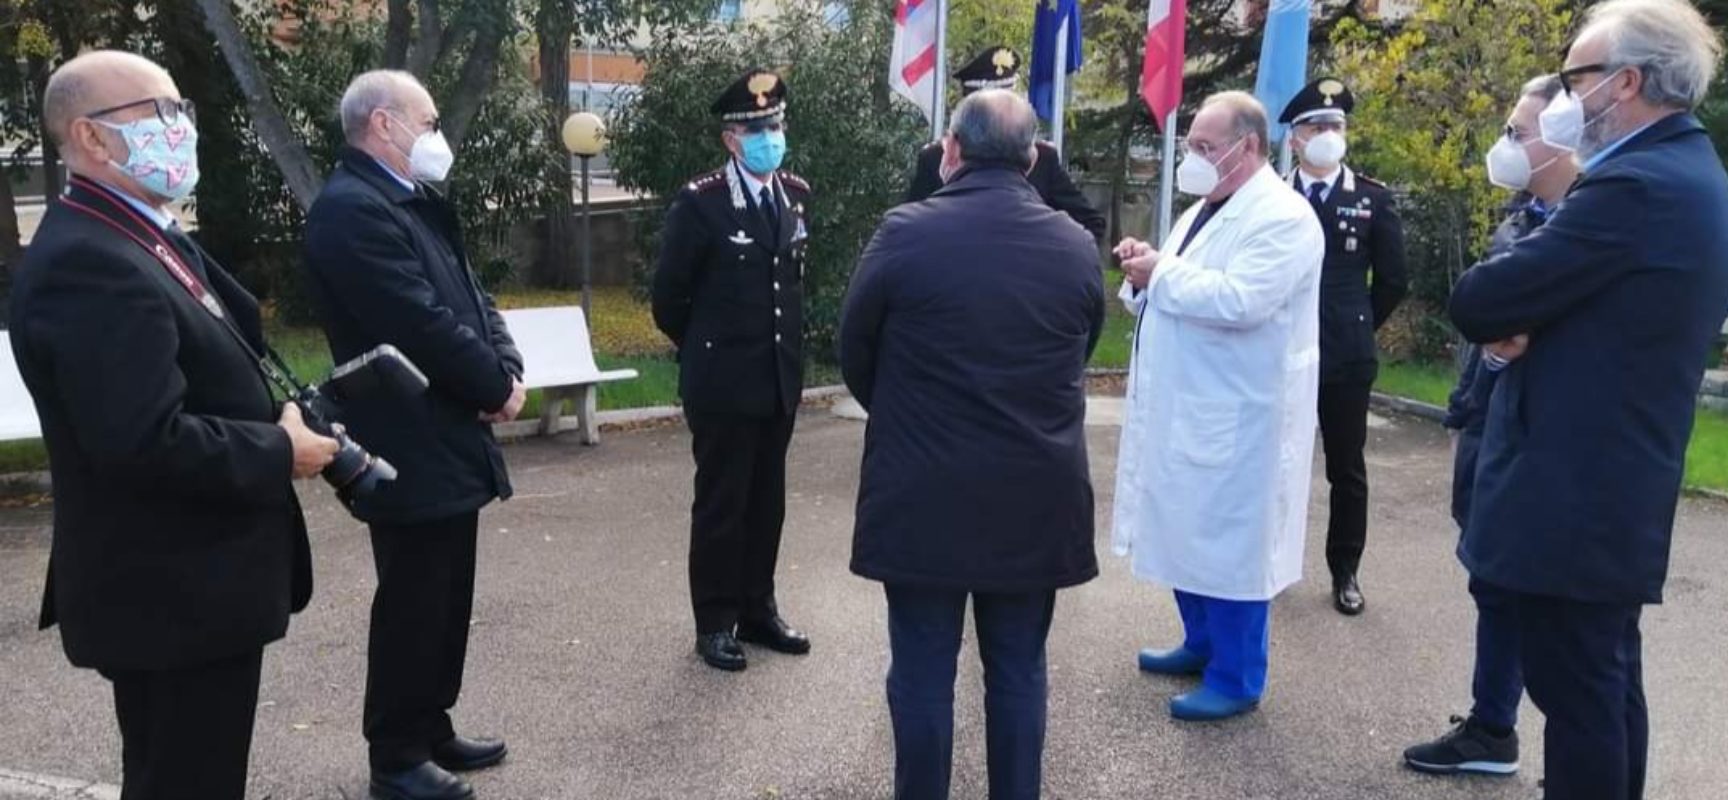 Carabinieri e Comitato de Trizio donano dispositivi di protezione a operatori sanitari